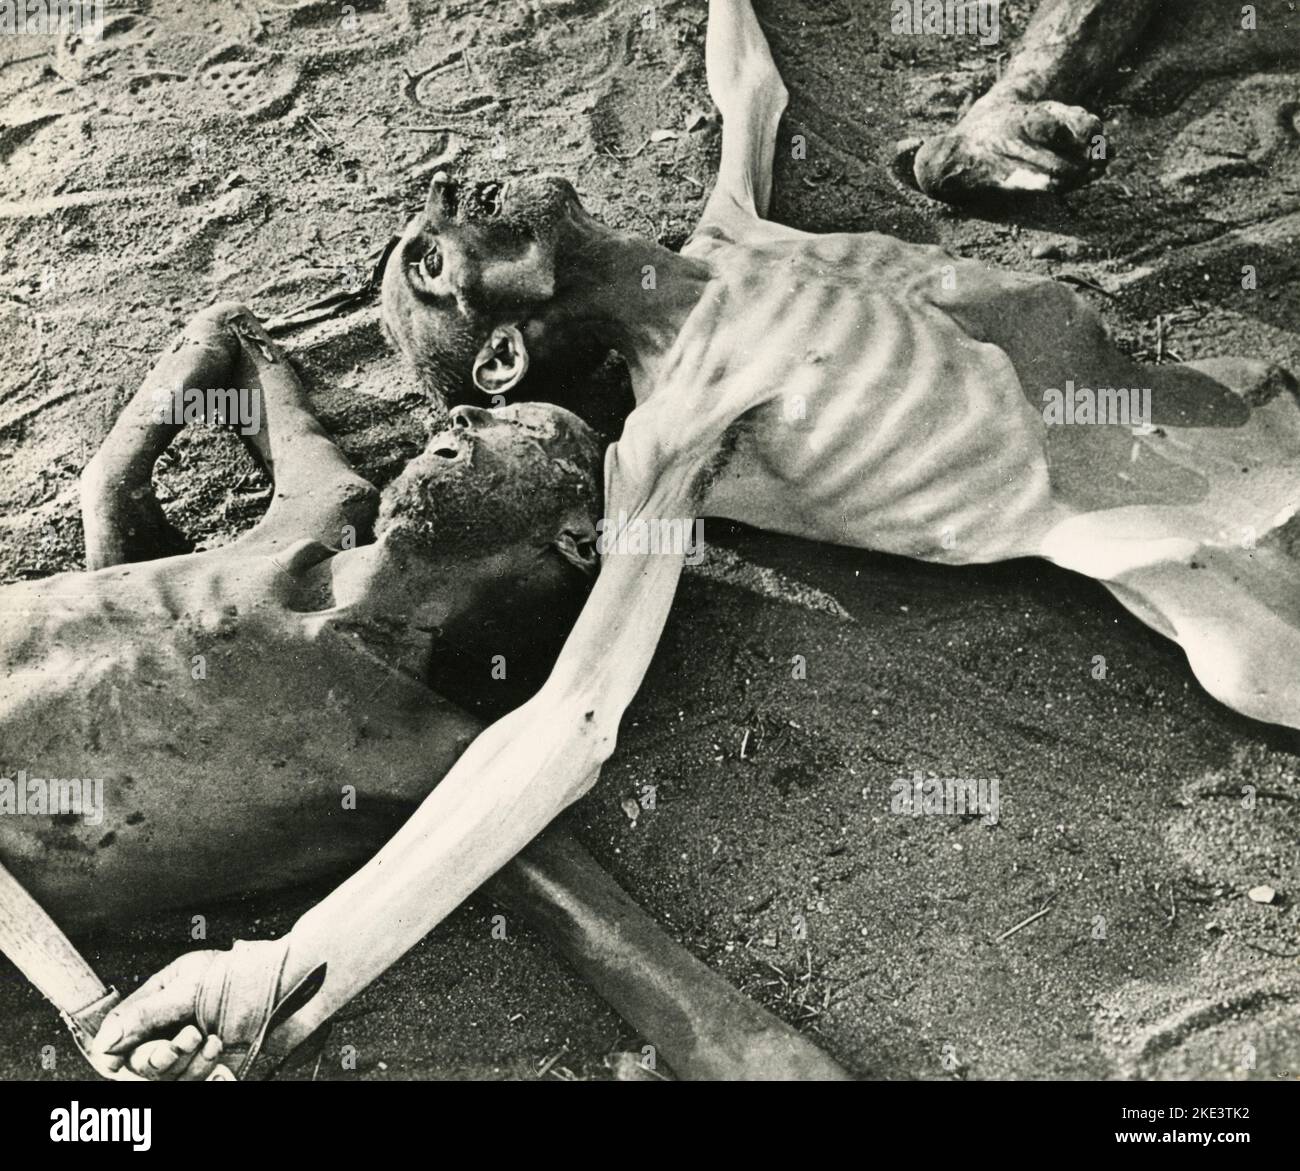 Prigionieri del campo di concentramento tedesco trovati morti nel lager, Auschwitz, Polonia 1945 Foto Stock